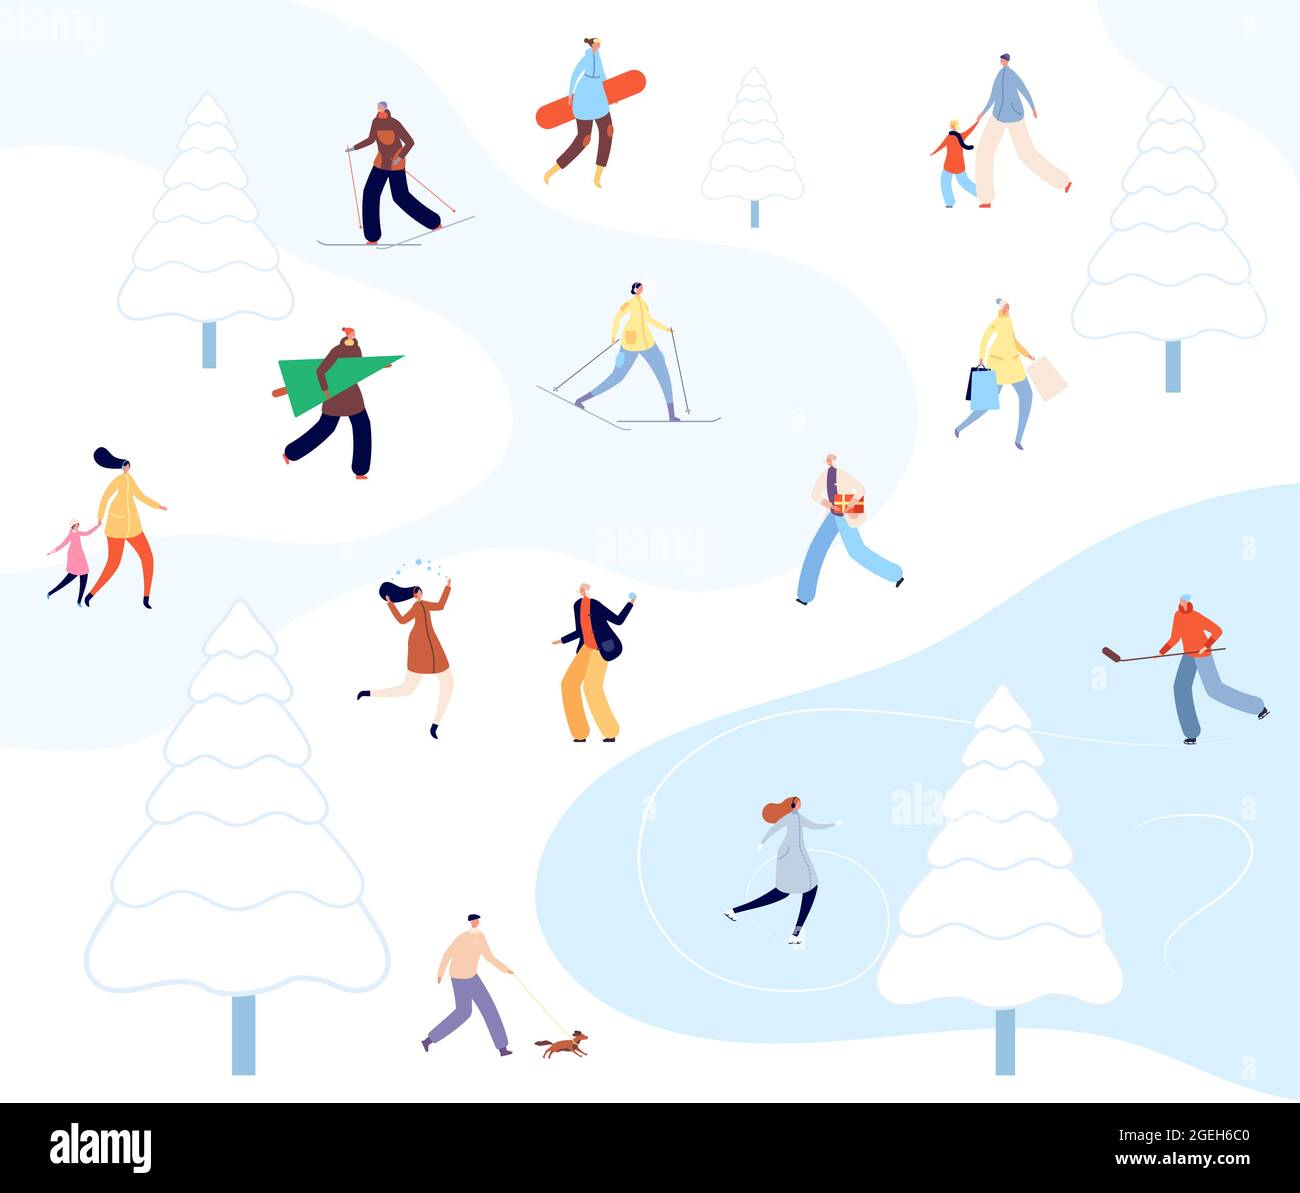 Menschen zu Fuß Winter Park. Cartoon Paare Aktivität, Person Skifahren in der Natur. Schneespaziergang, urbanes Schlittschuhlaufen auf Eis Vektorgrafik Stock Vektor